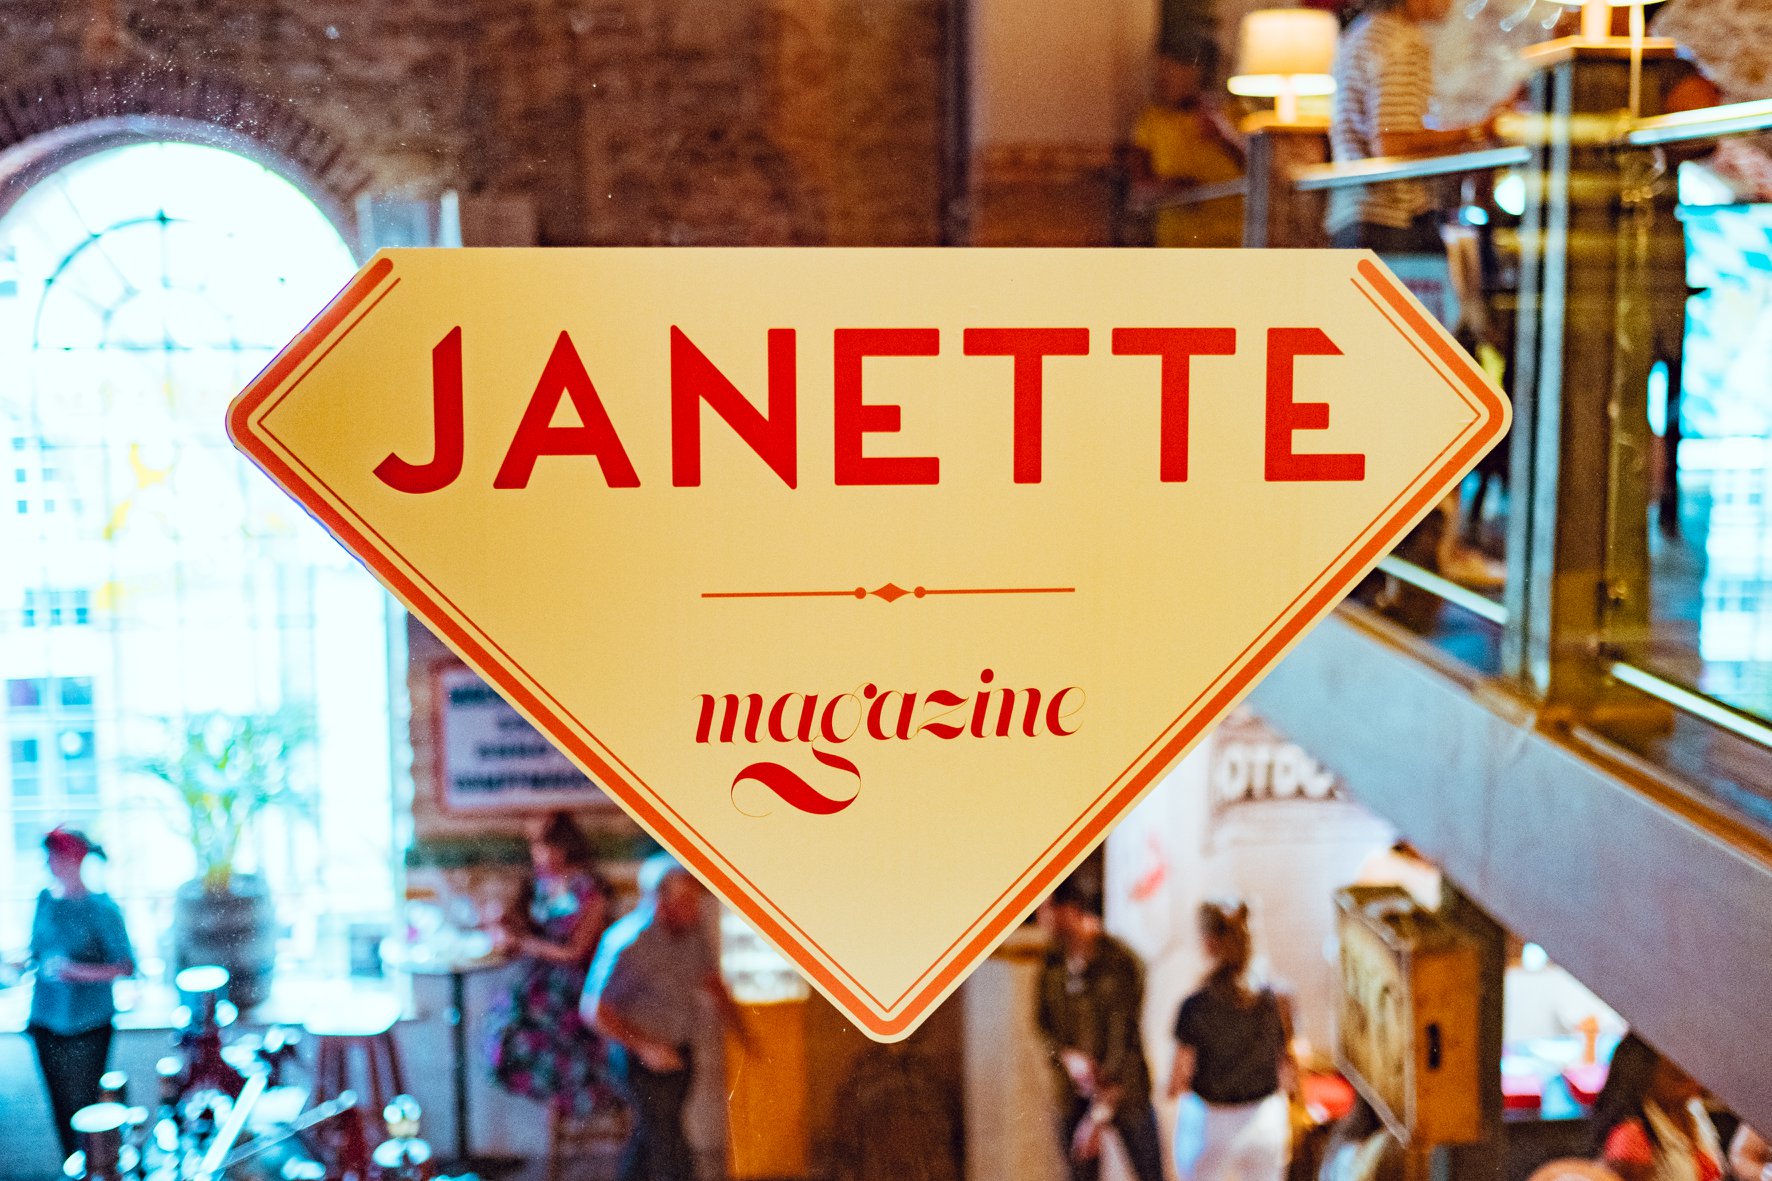 graphik retail decoration event reboard nancy guinguette de janette